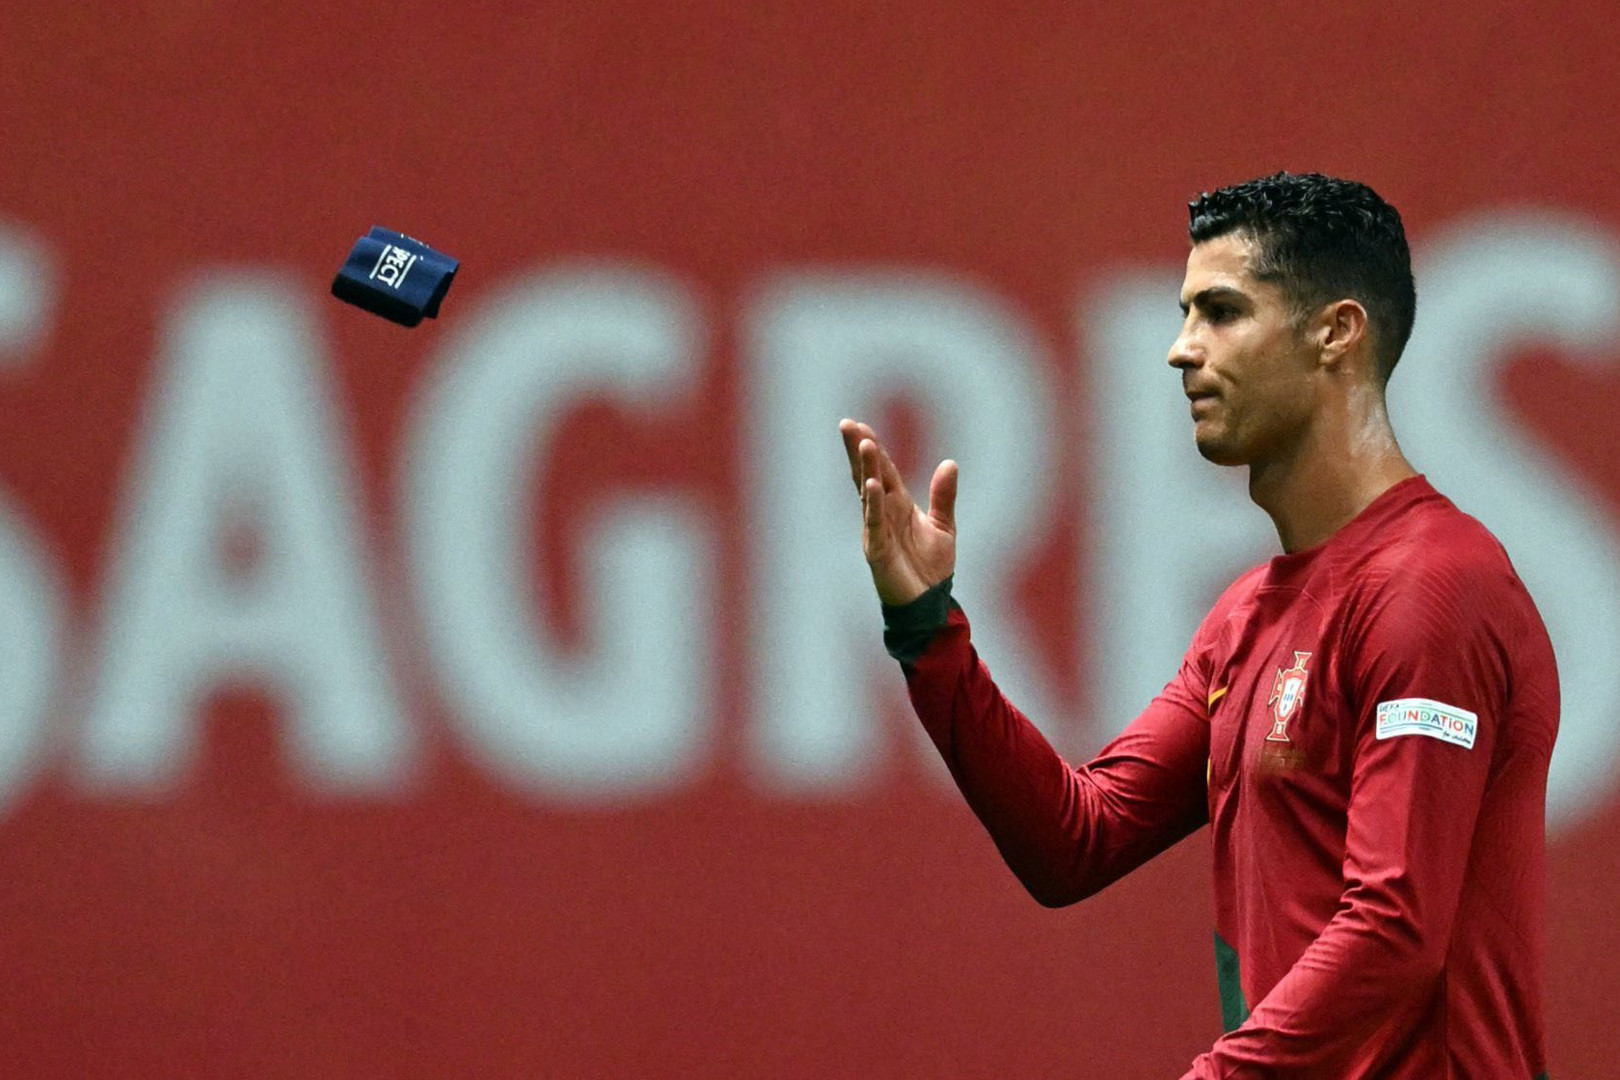 Bồ Đào Nha bại trận: Ronaldo và thung lũng bóng tối